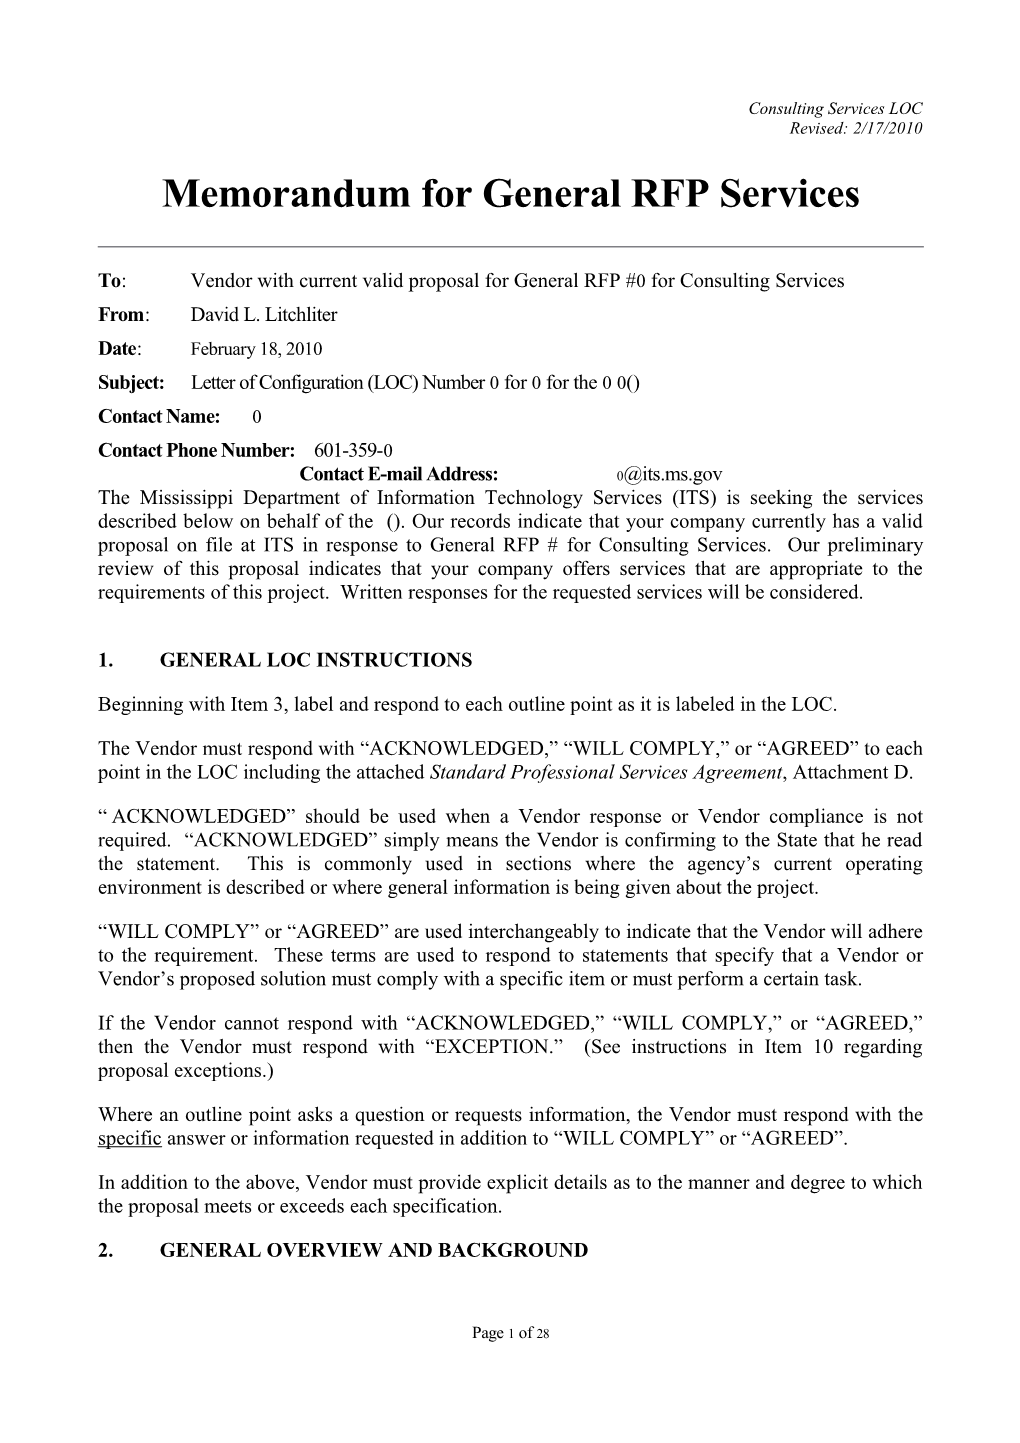 Memorandum for General RFP Configuration s5